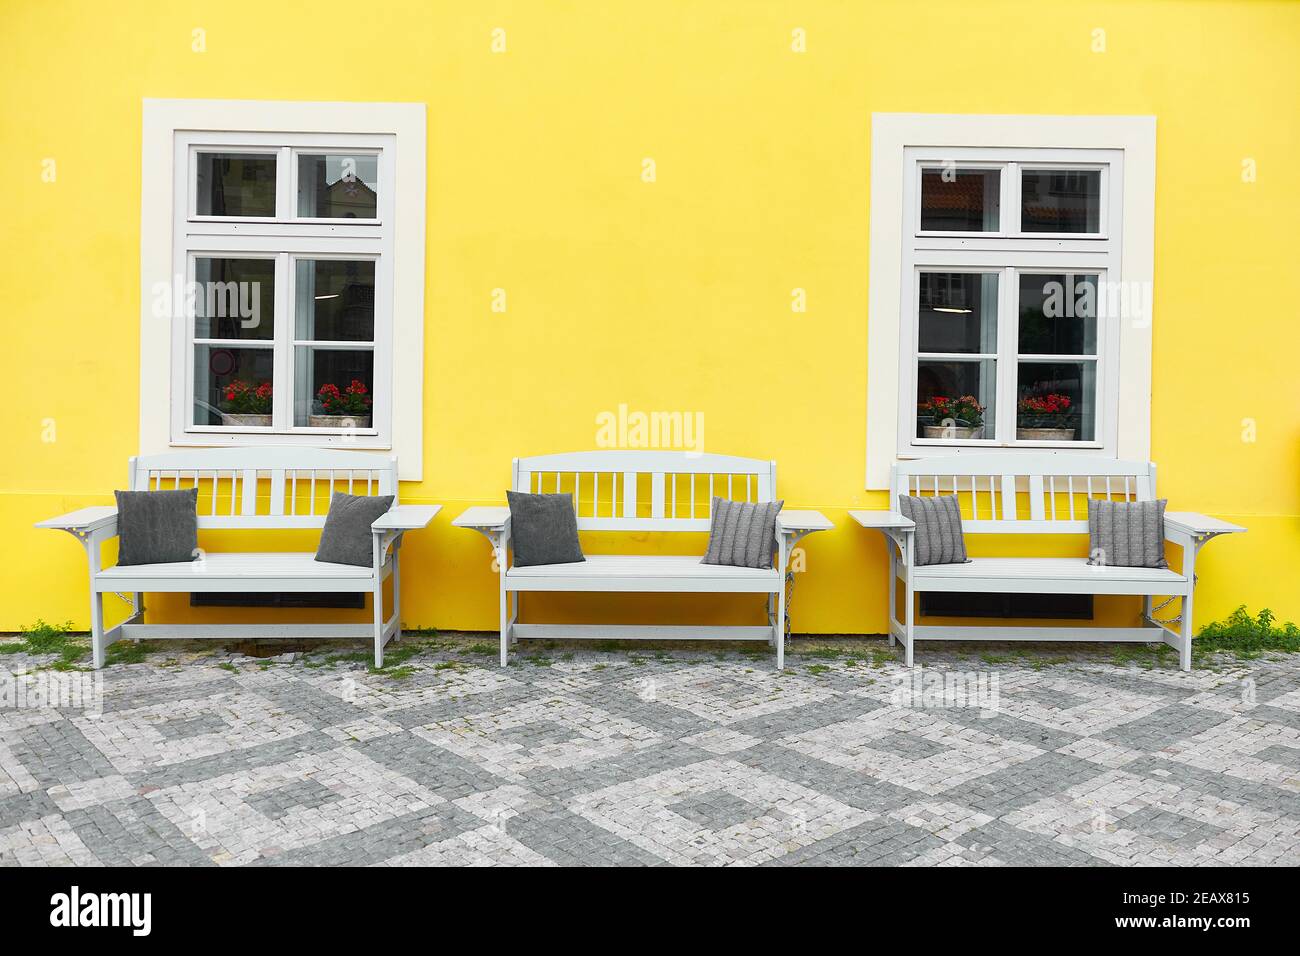 Prague à la mode. Maison peinte jaune lumineuse avec façade classique et trois bancs en bois blanc debout par deux fenêtres blanches. Banque D'Images